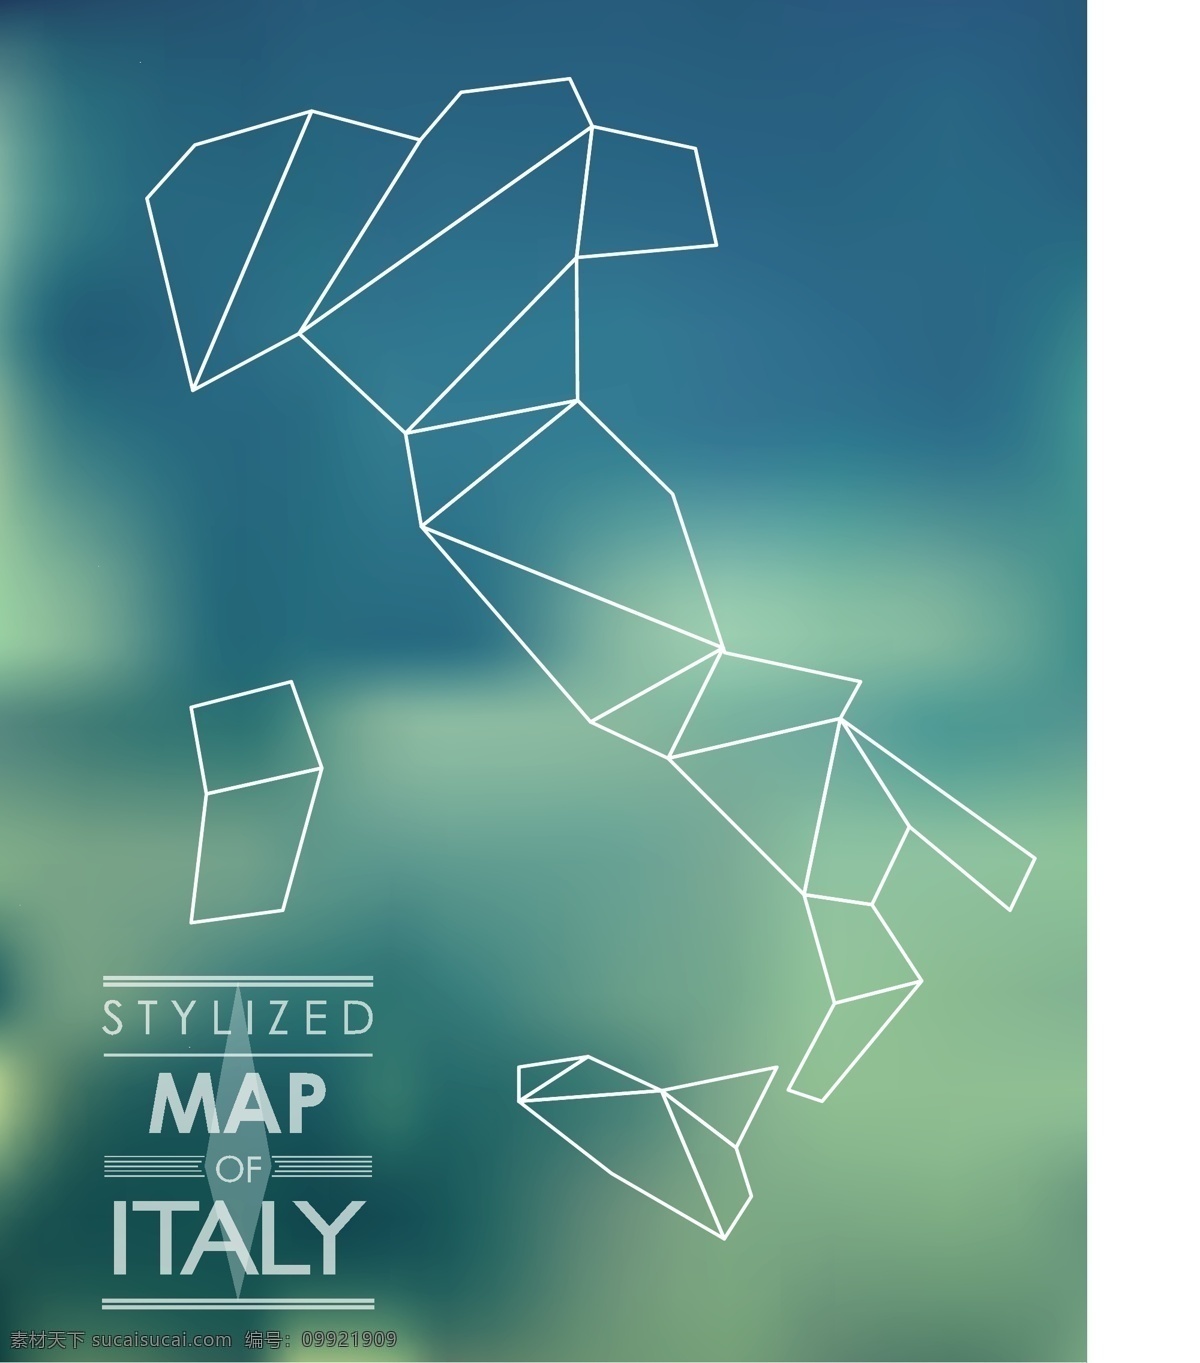 意大利设计 意大利 意大利图标 意大利标志 意大利文化 意大利风情 标志图标 其他图标